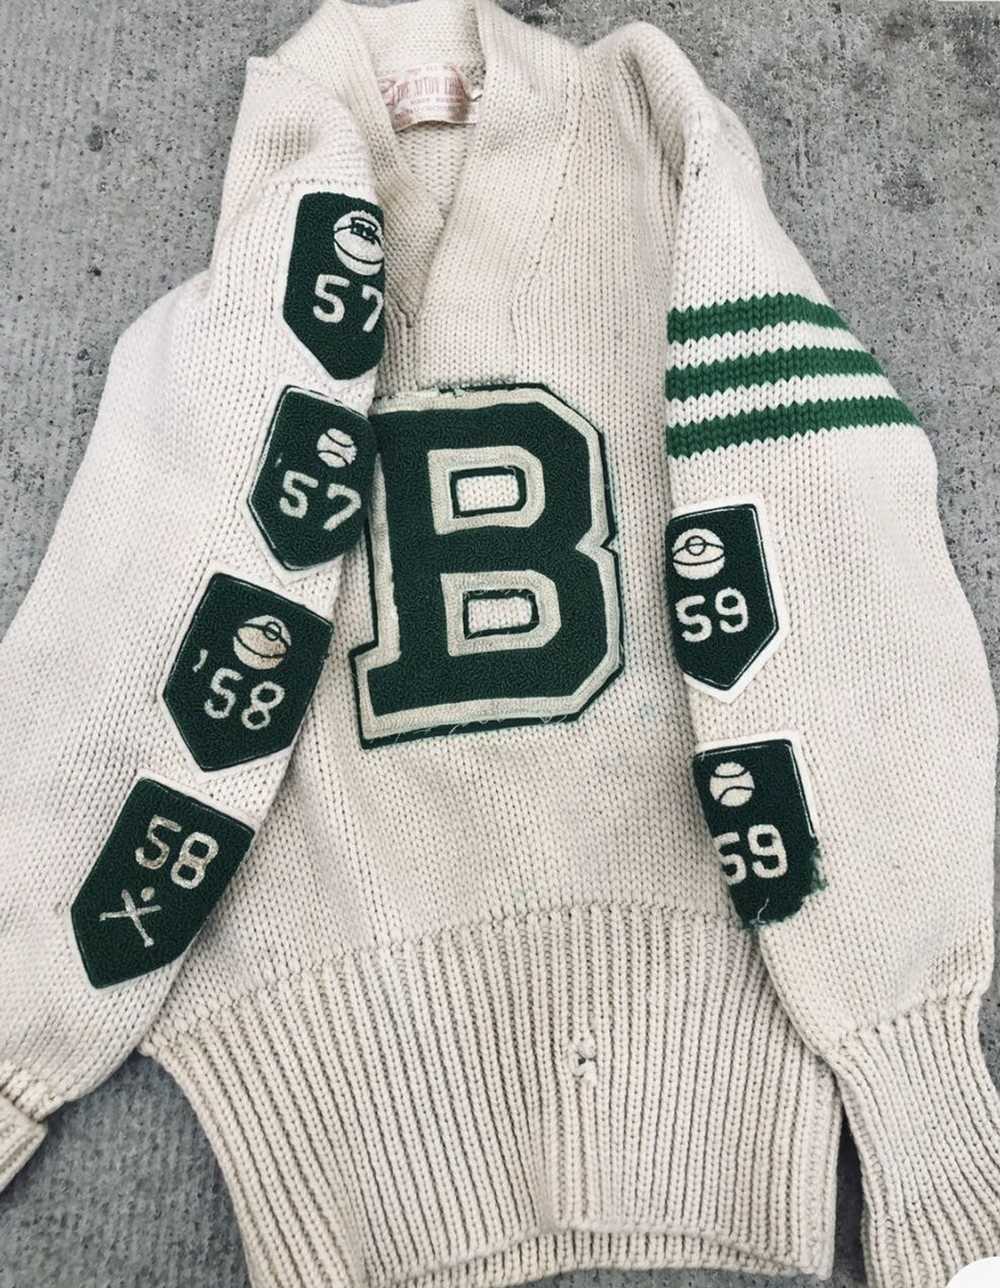 Vintage Vgt 50s school lettermen sweater patches … - image 2